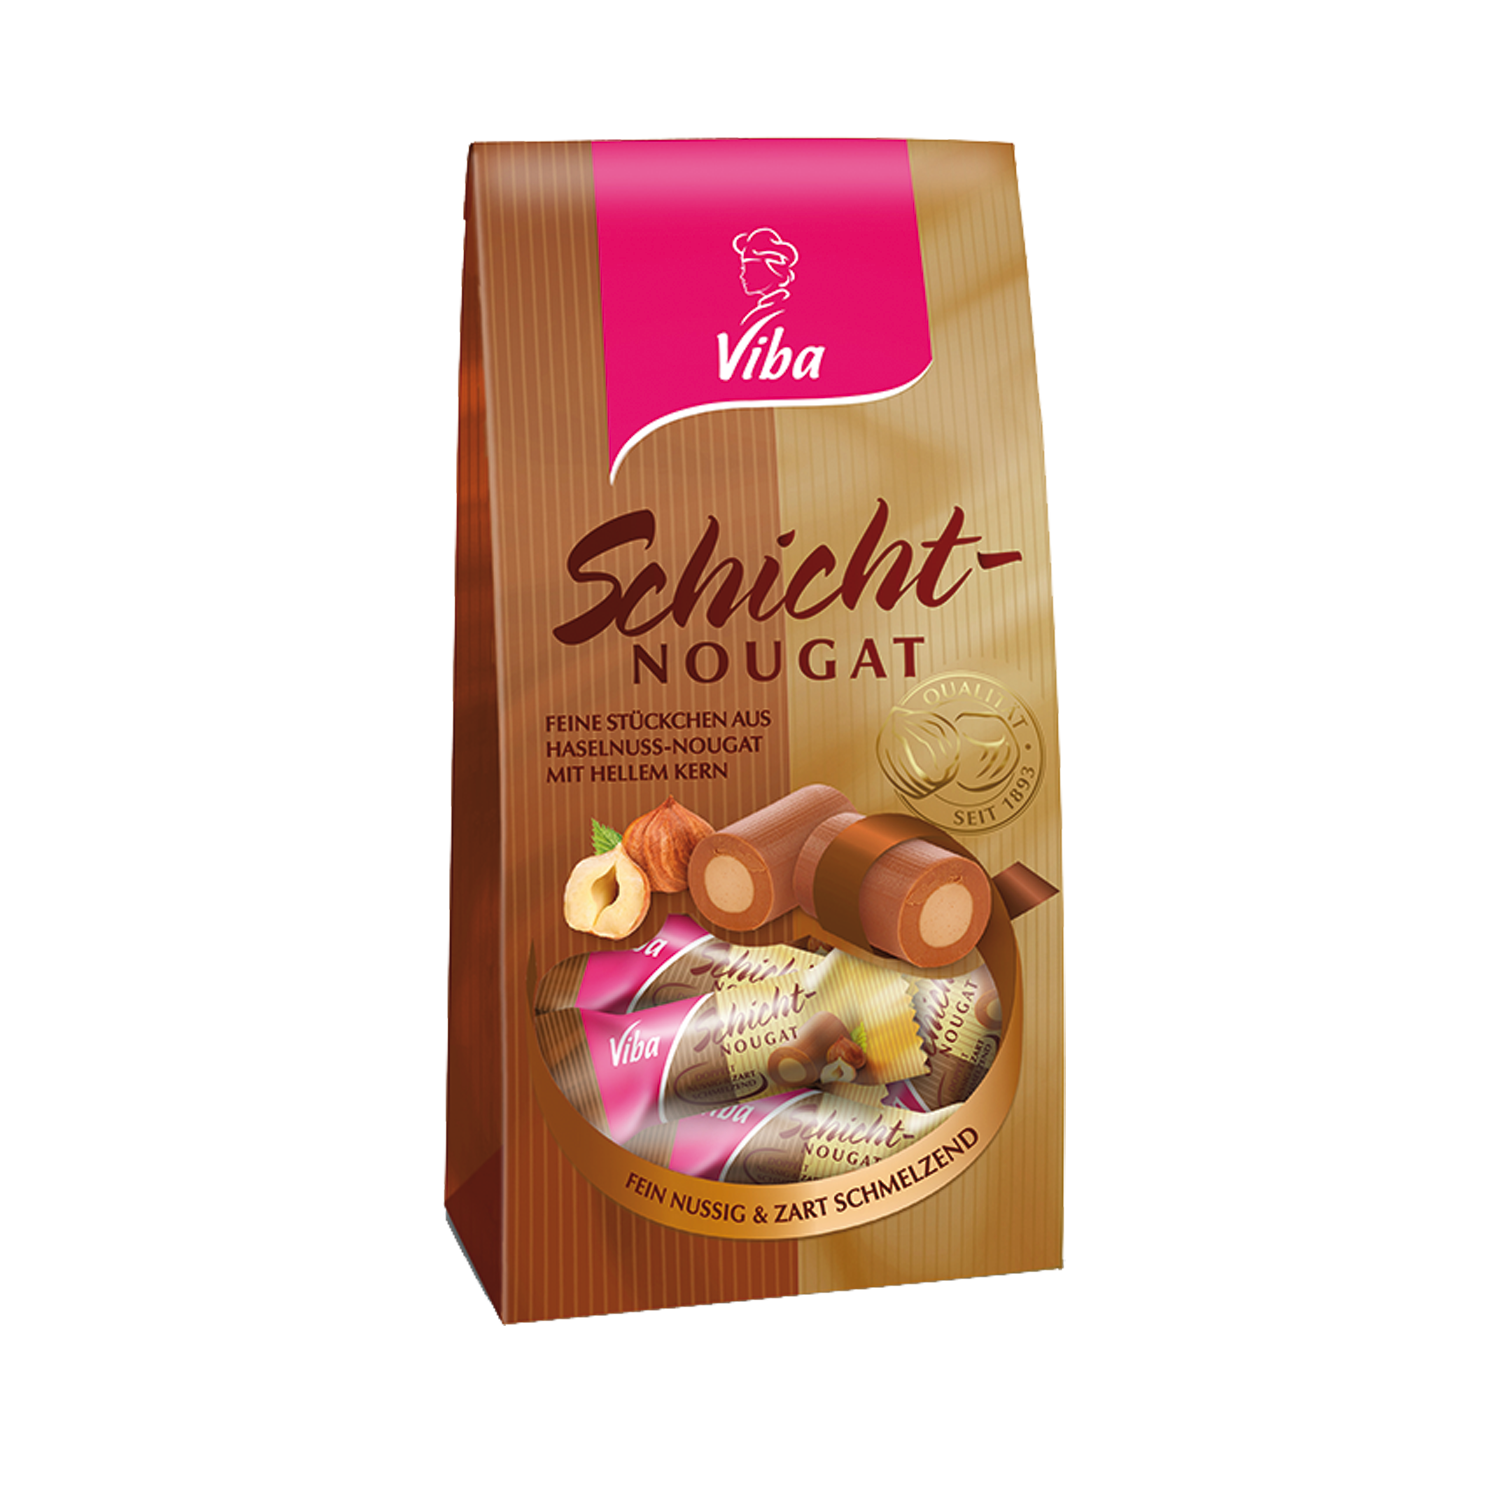 Viba Sweets I Schicht-Nougat Röllchen I 100 Gramm Beutel | Thüringer ...